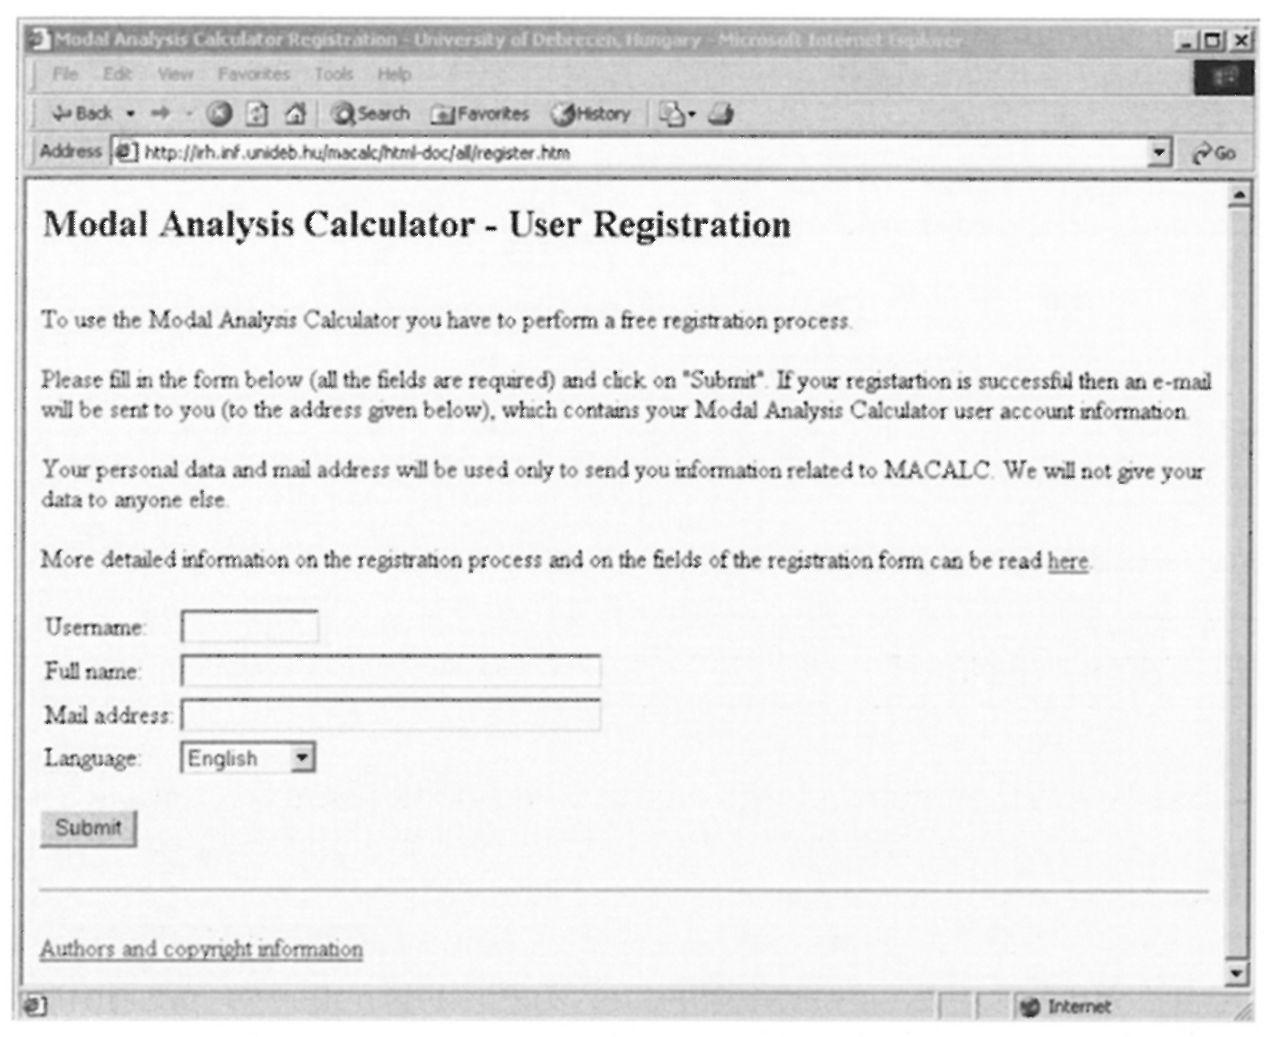 Földtani Közlöny 136/4 2. ábra. A Modal Analysis Calculator web-szolgáltatás regisztrációs ablaka Fig.